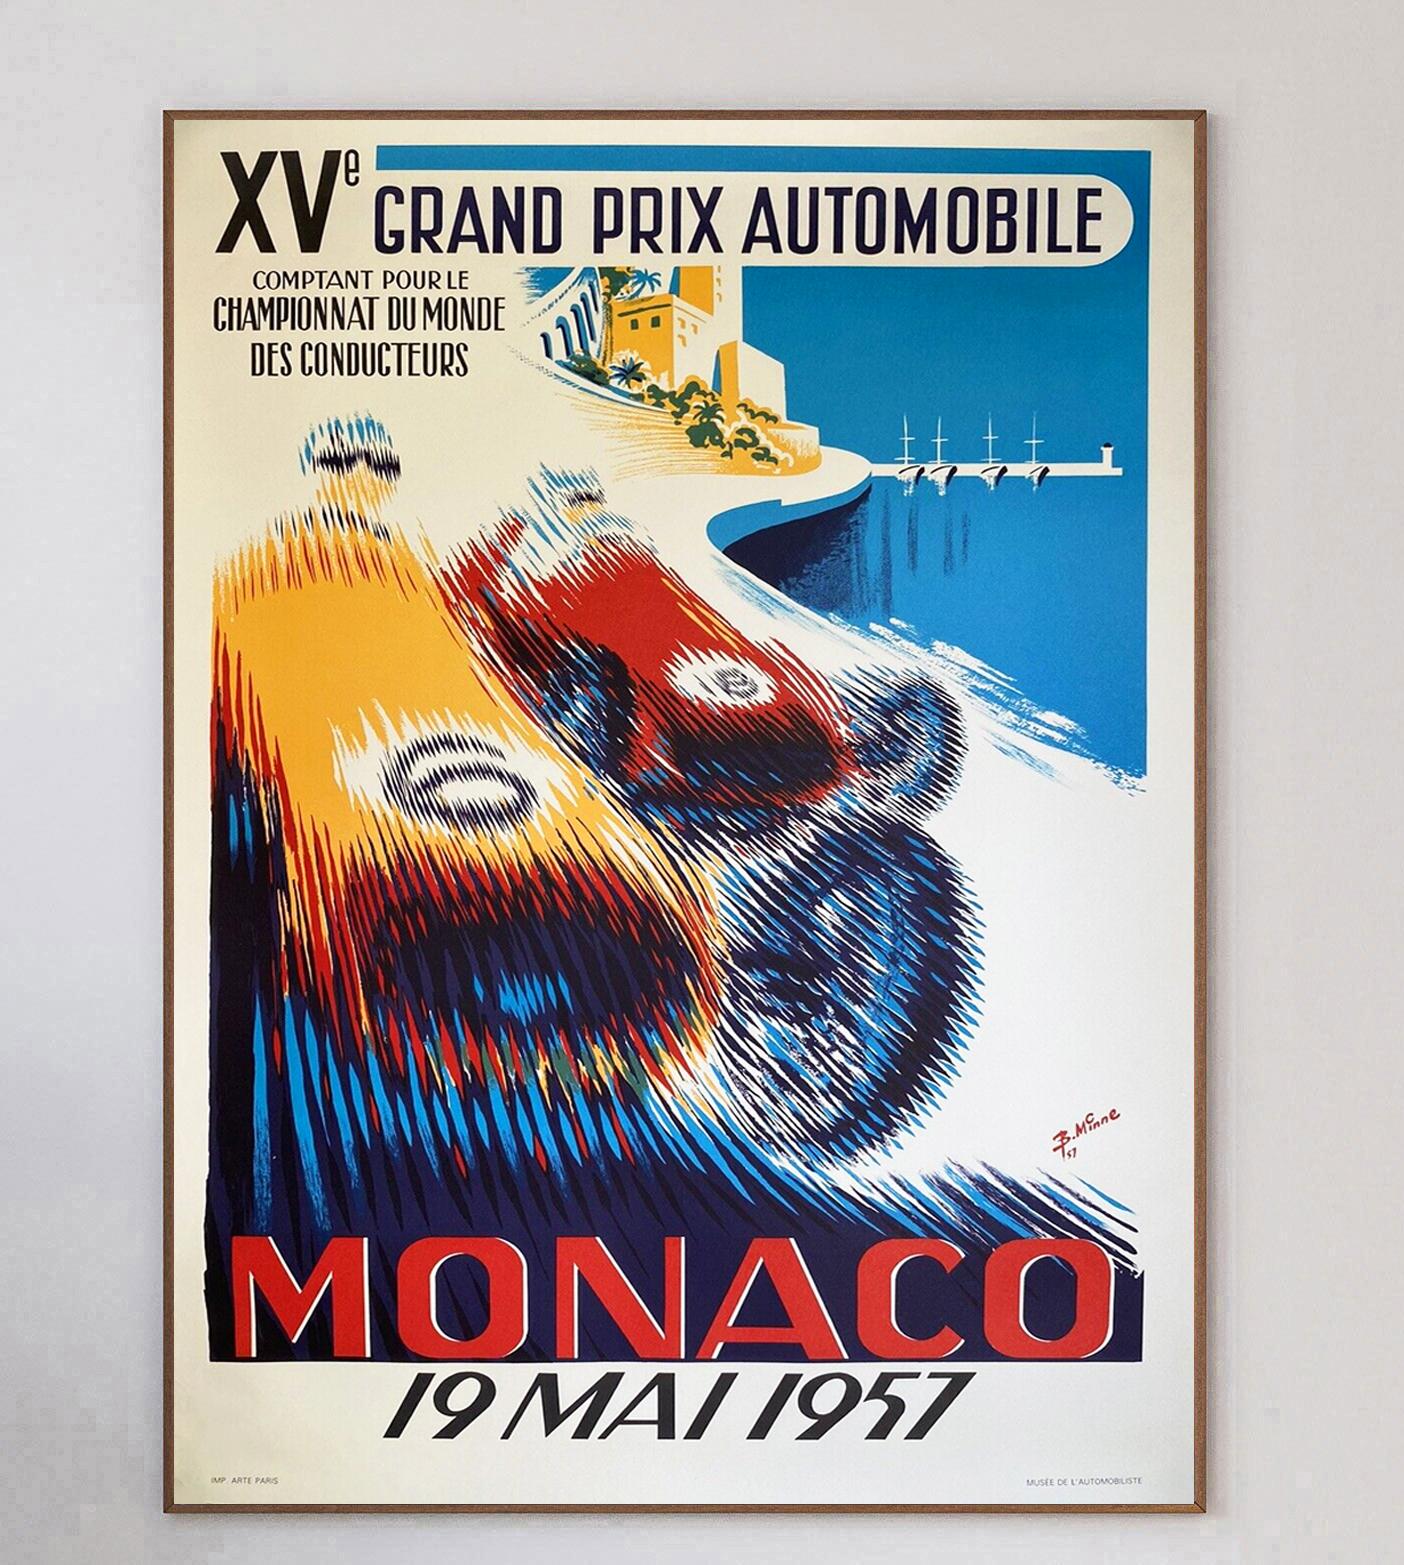 Dieses Plakat für den Großen Preis von Monaco 1957 wurde von B. Minne entworfen und brillant illustriert. Die kräftigen und lebhaften Farben des Designs stellen den Kontrast zwischen den Rennwagen, der Sonne und dem Meer von Monaco dar.

Dieses